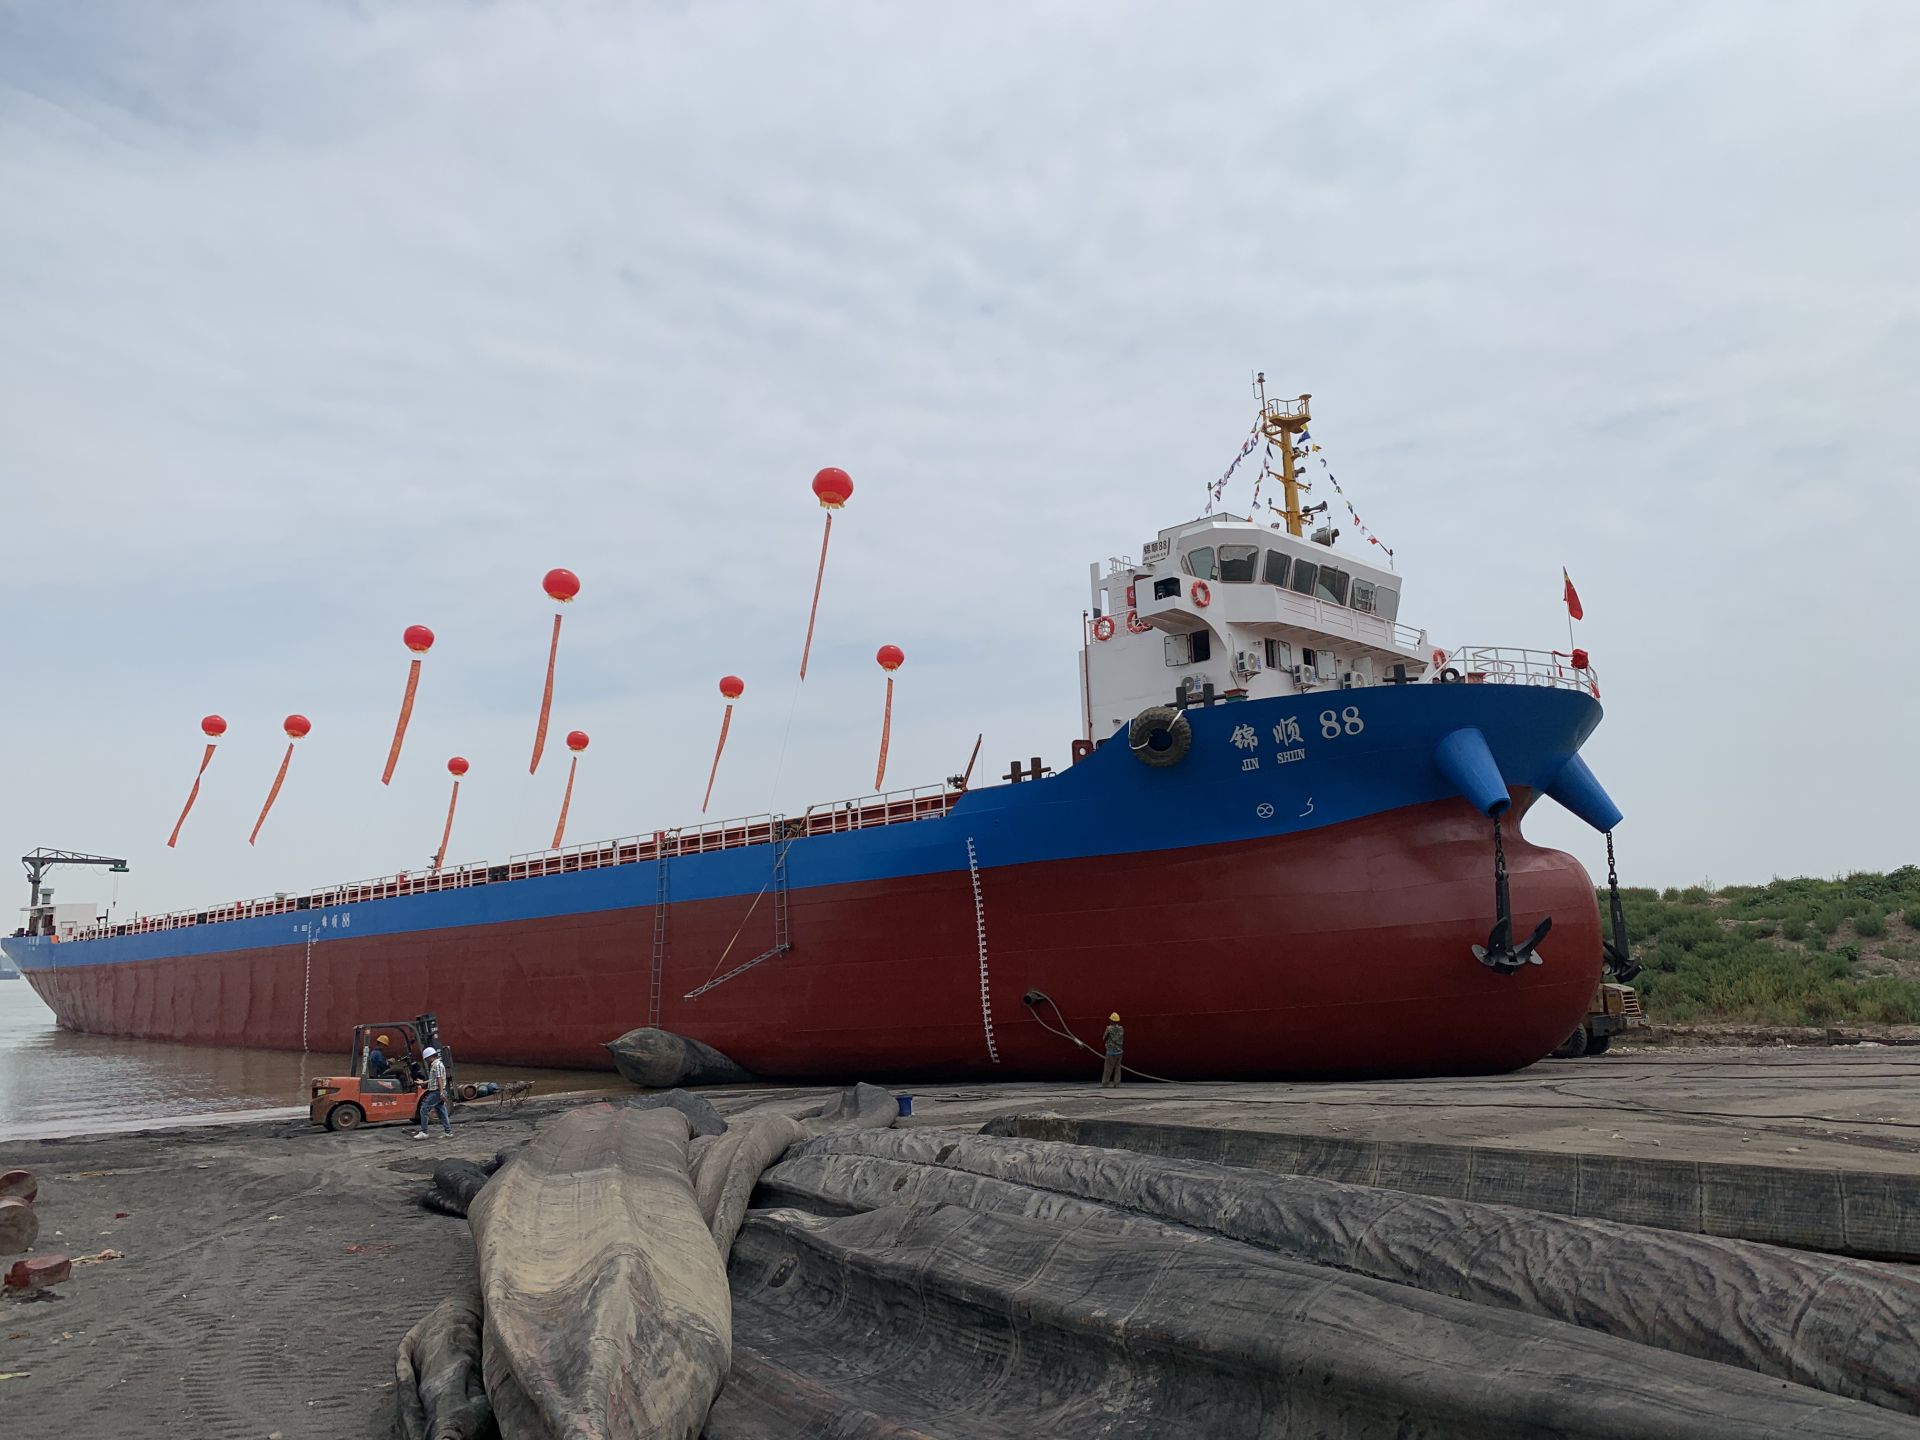 6124总吨,设计装载502标箱,是目前江西省内建造的最大内河集装箱船舶